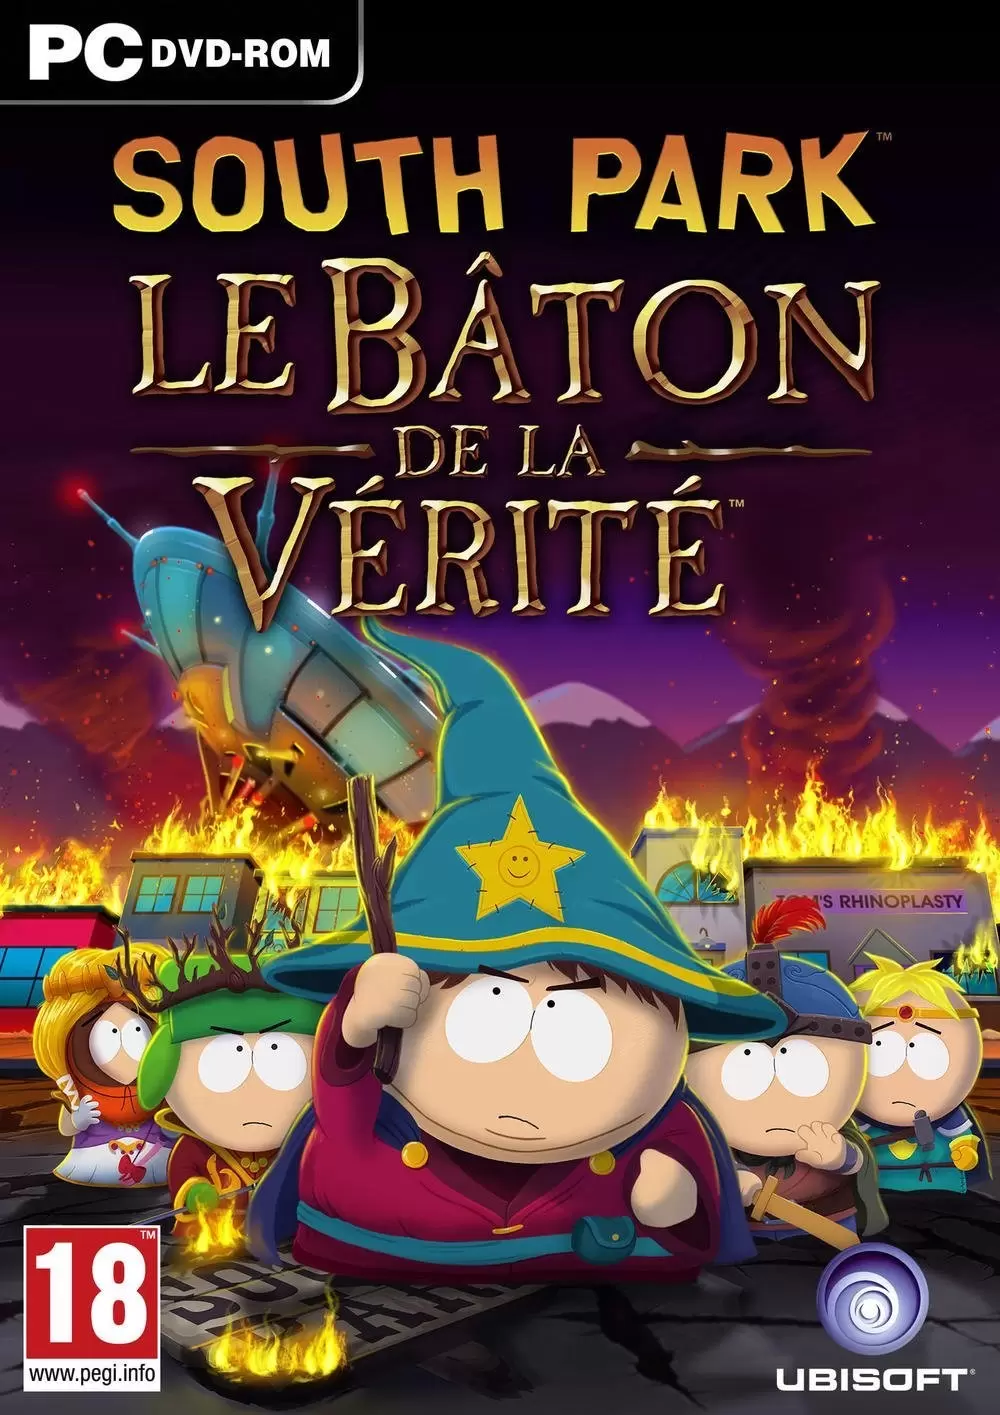 PC Games - South Park : Le Bâton de la Vérité